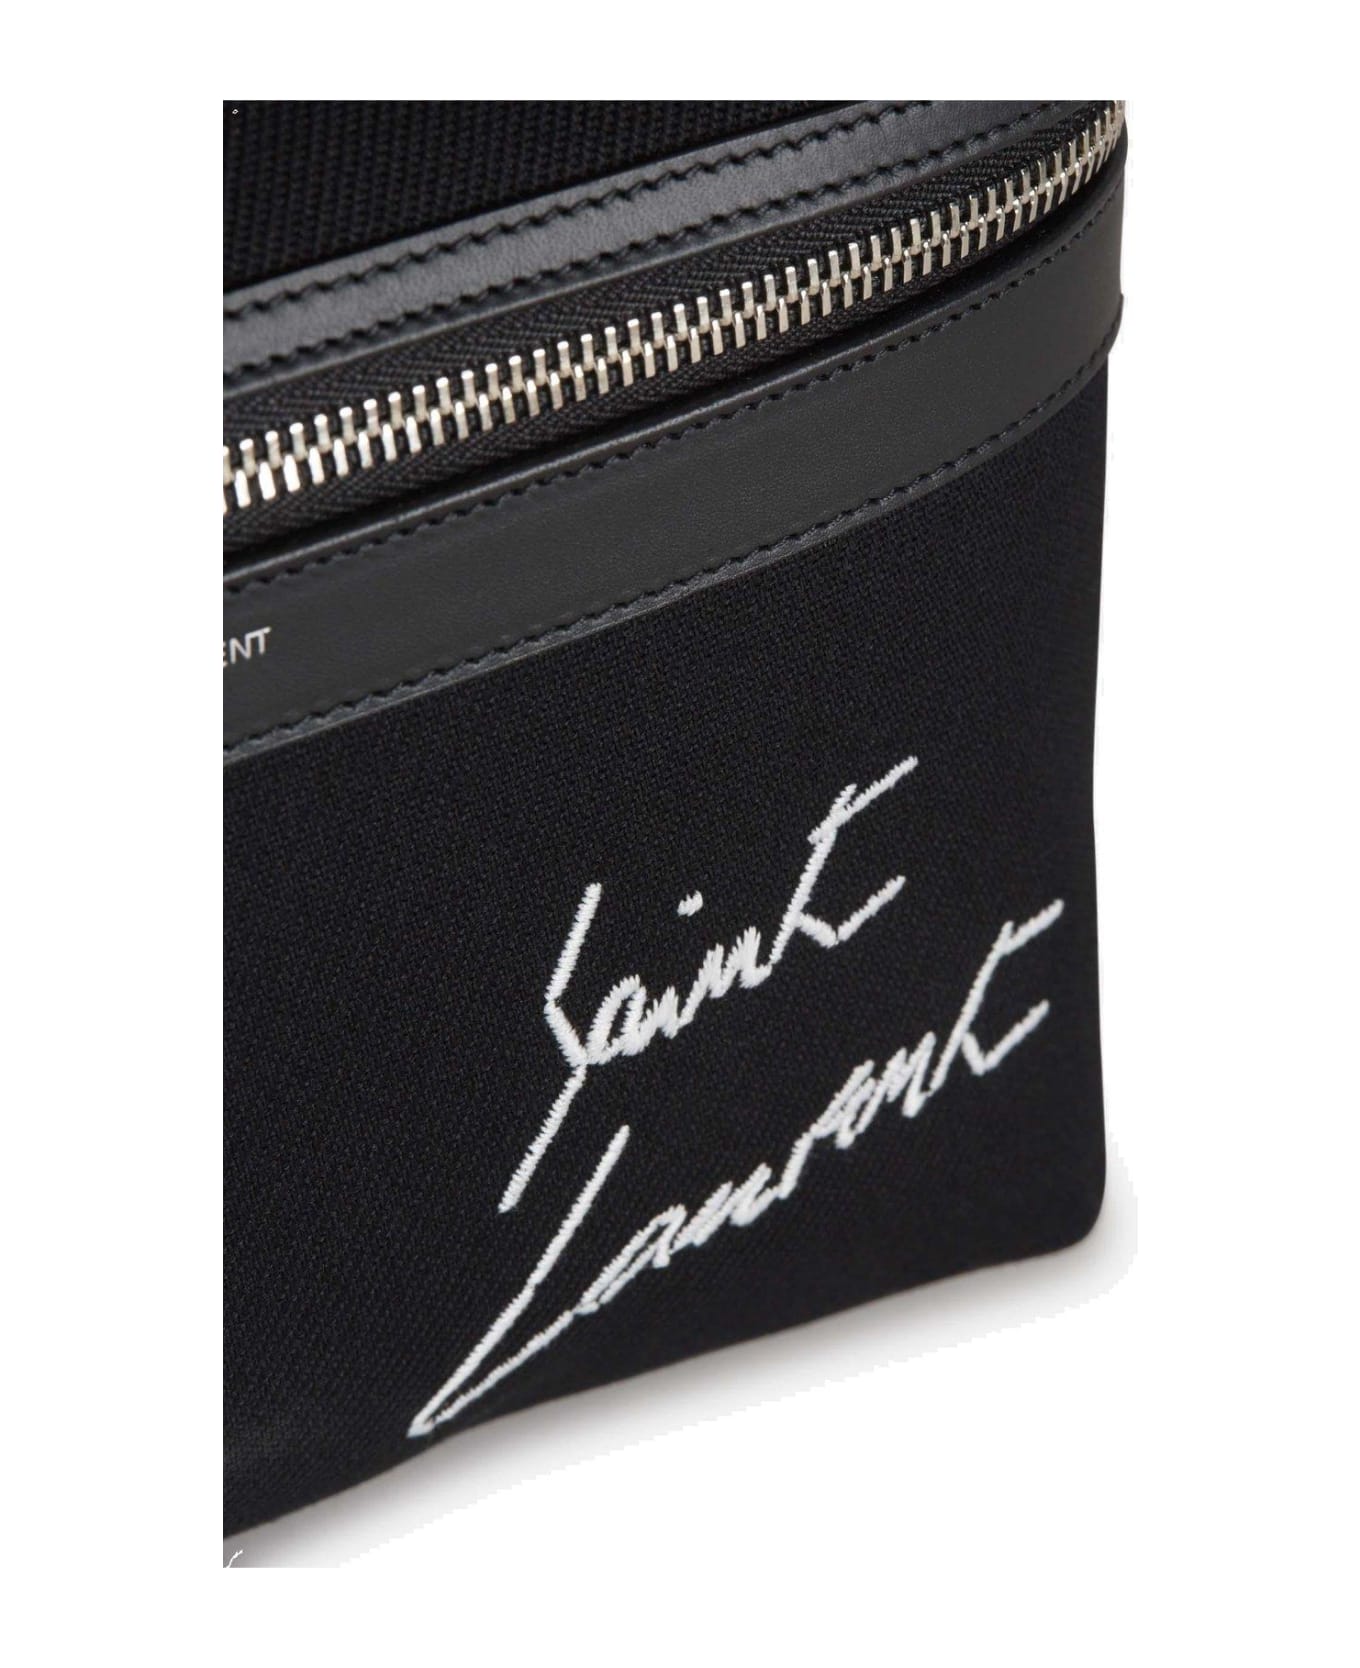 Saint Laurent City Logo Emboridered Zipped Backpack - Black